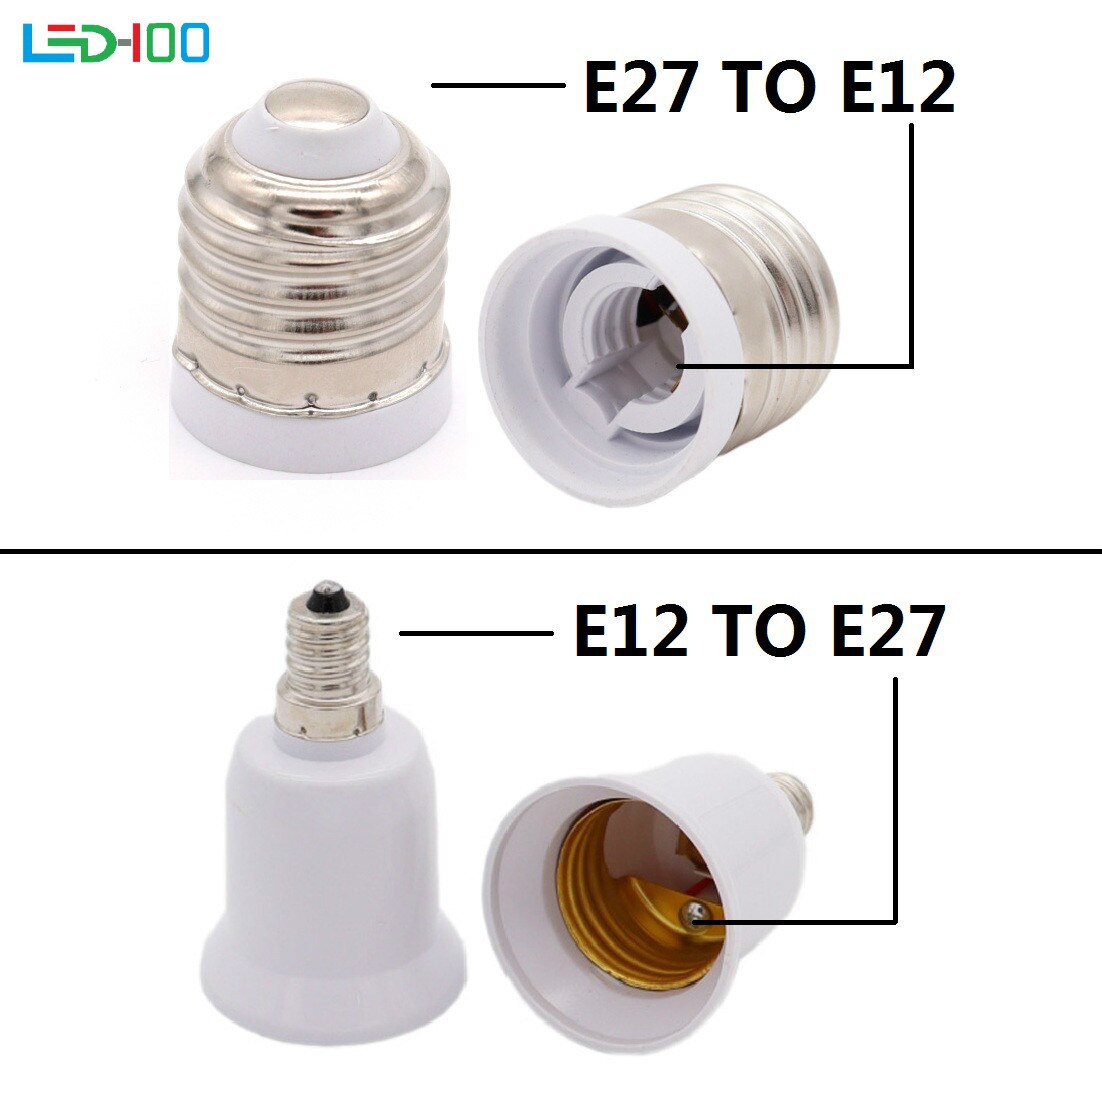 Lamphouder E27 Om E12 Adapter Converter Vlamvertragende Houder Adapter E12 Om E27 Lampvoet